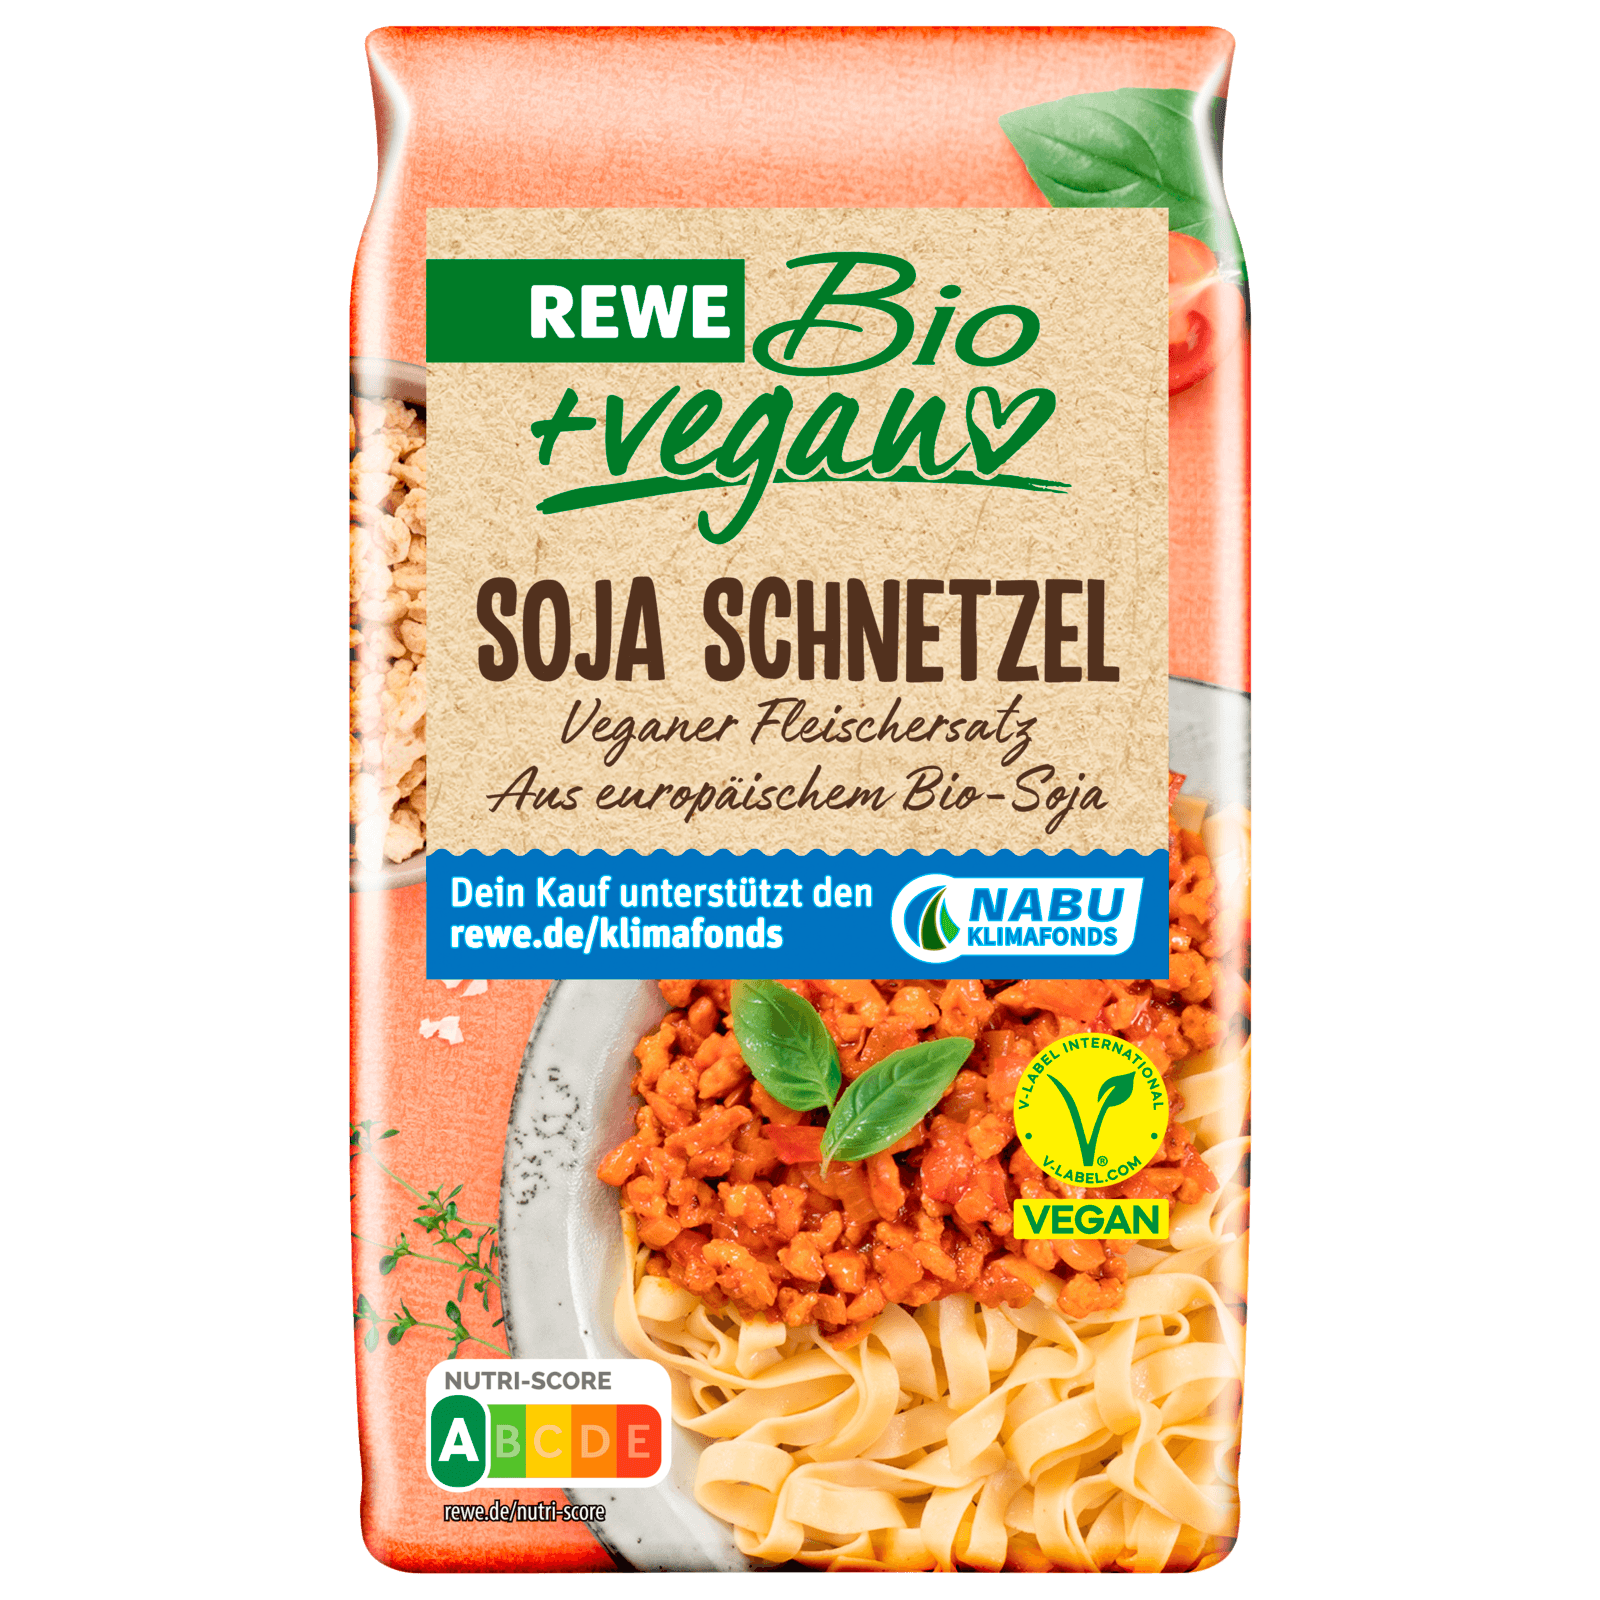 REWE Bio + vegan Soja Schnetzel 150g